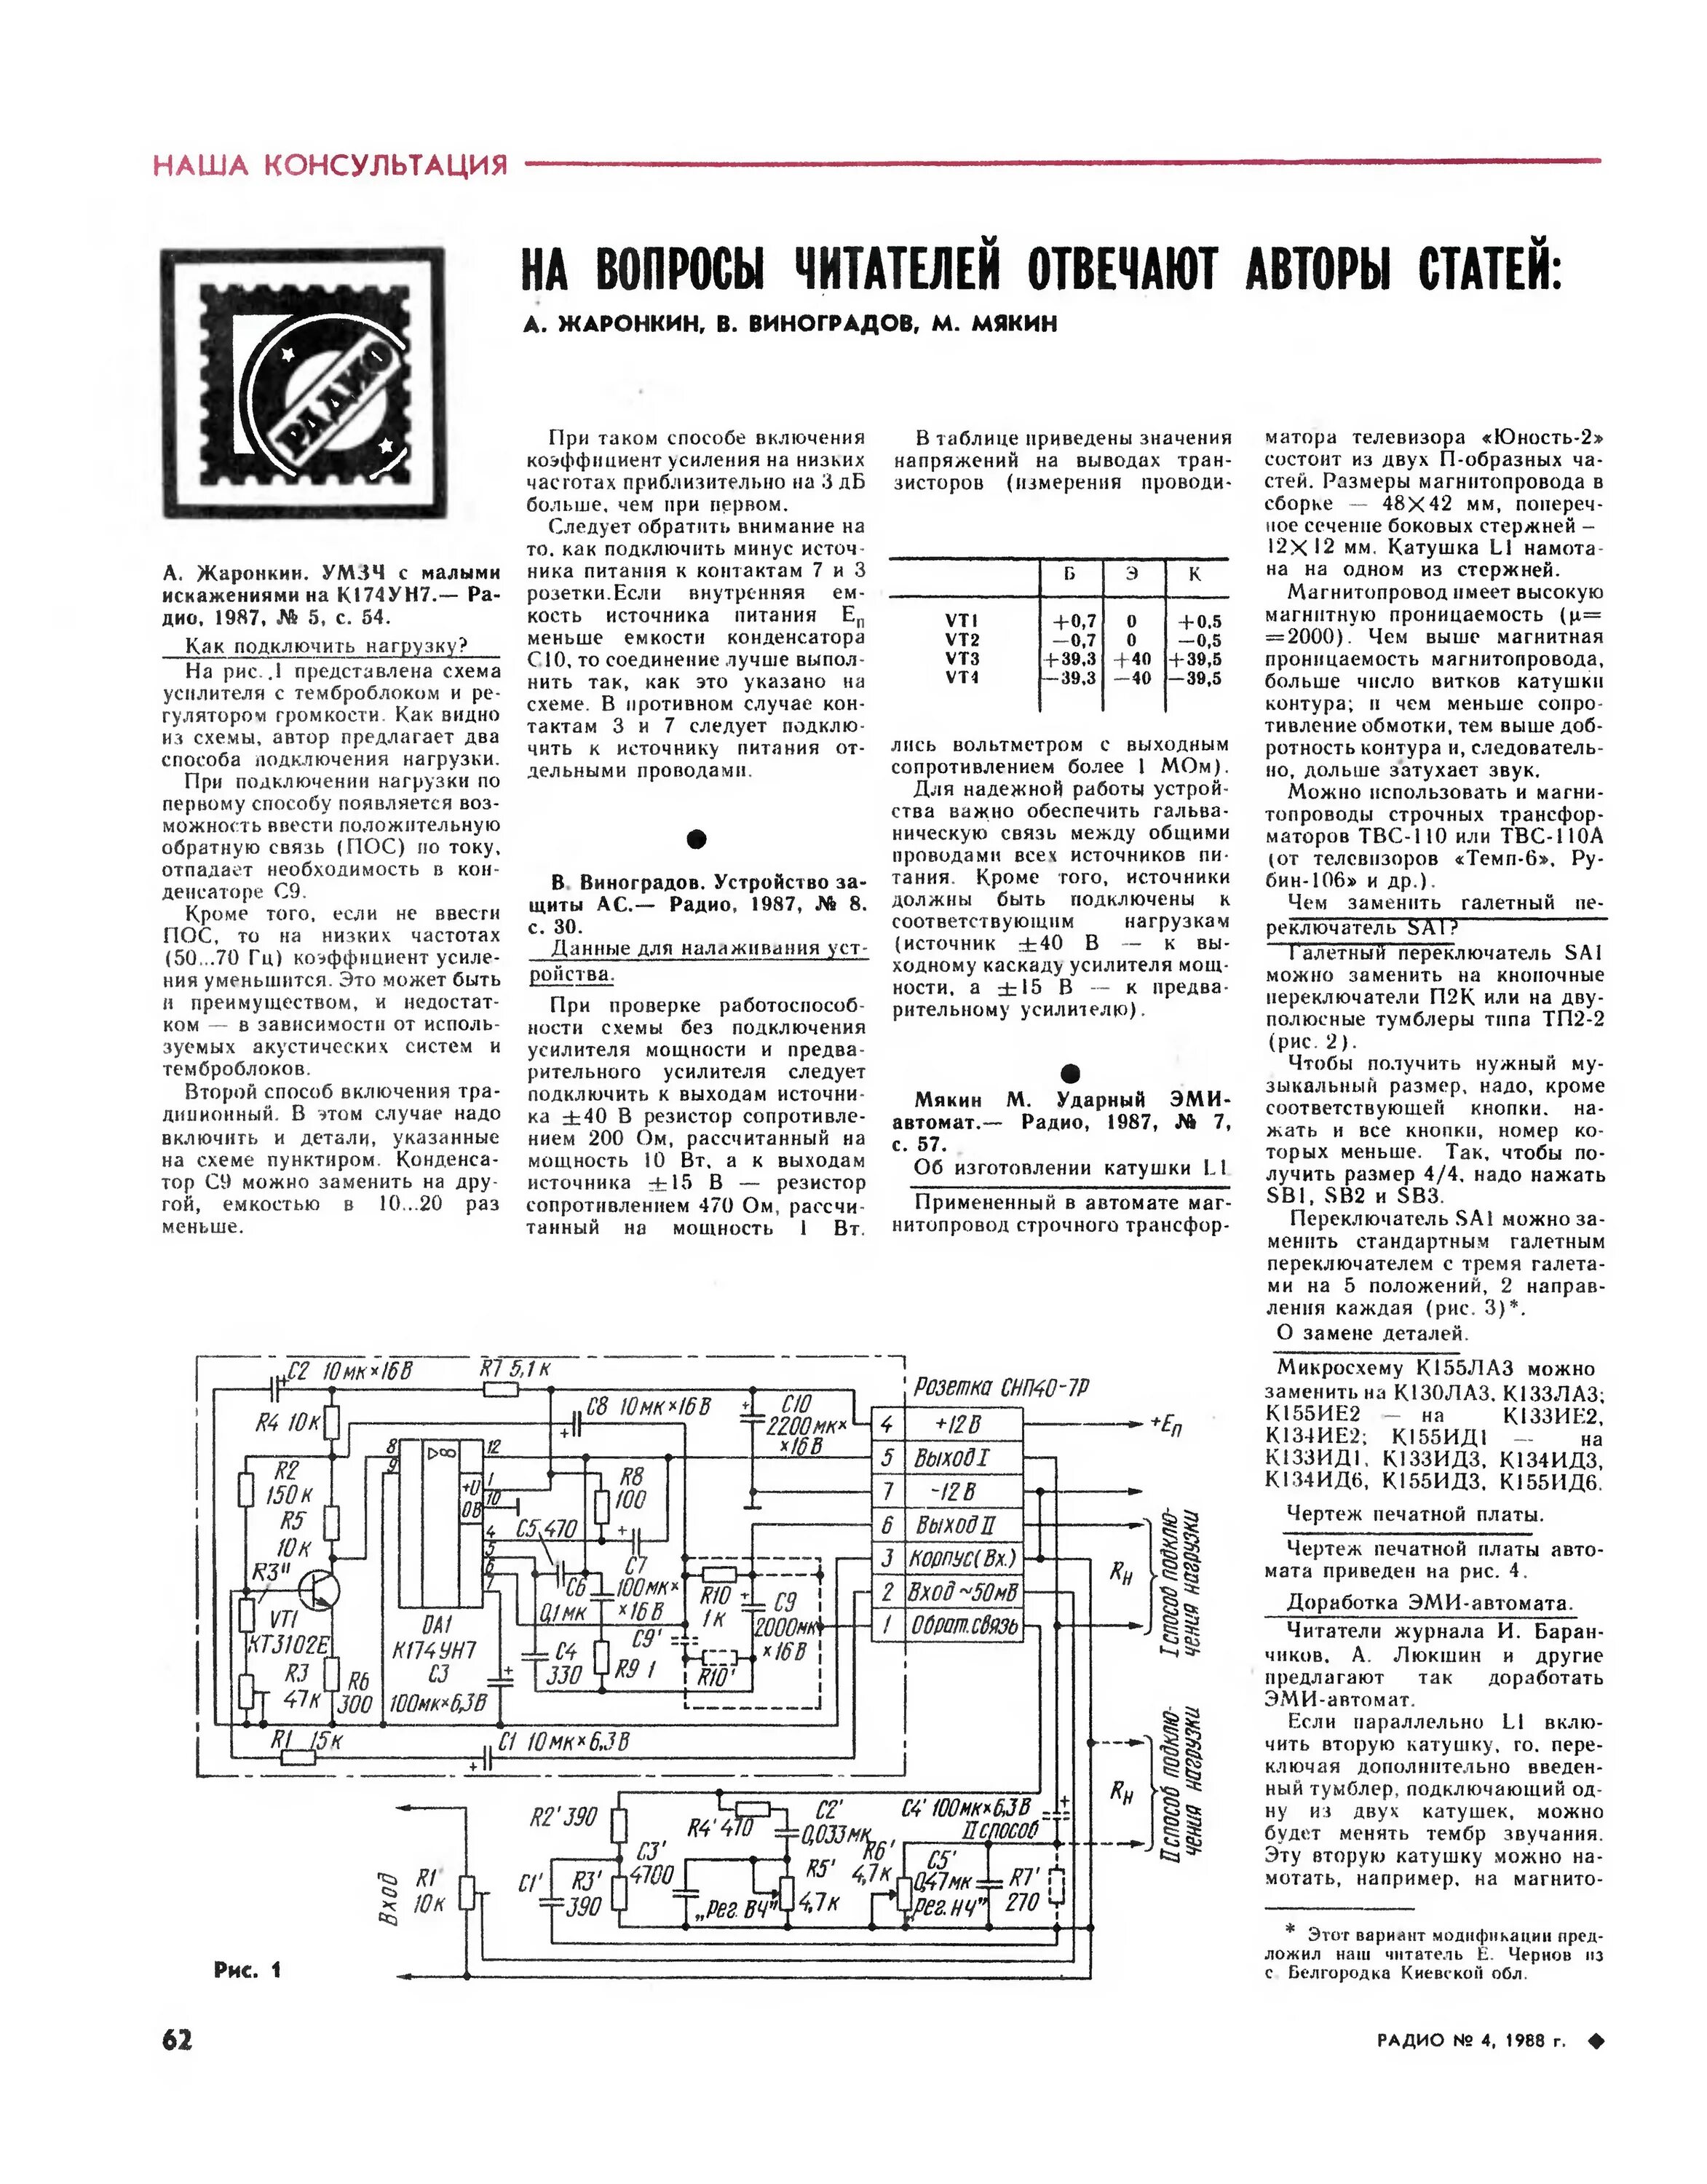 Радио номер 2. Высококачественный усилитель к174ун7. Усилитель мощности звуковой частоты к174ун7. Радиоконструктор 80 годов на к174ун7. Схема усилителя журнал радио 12 1988 года.